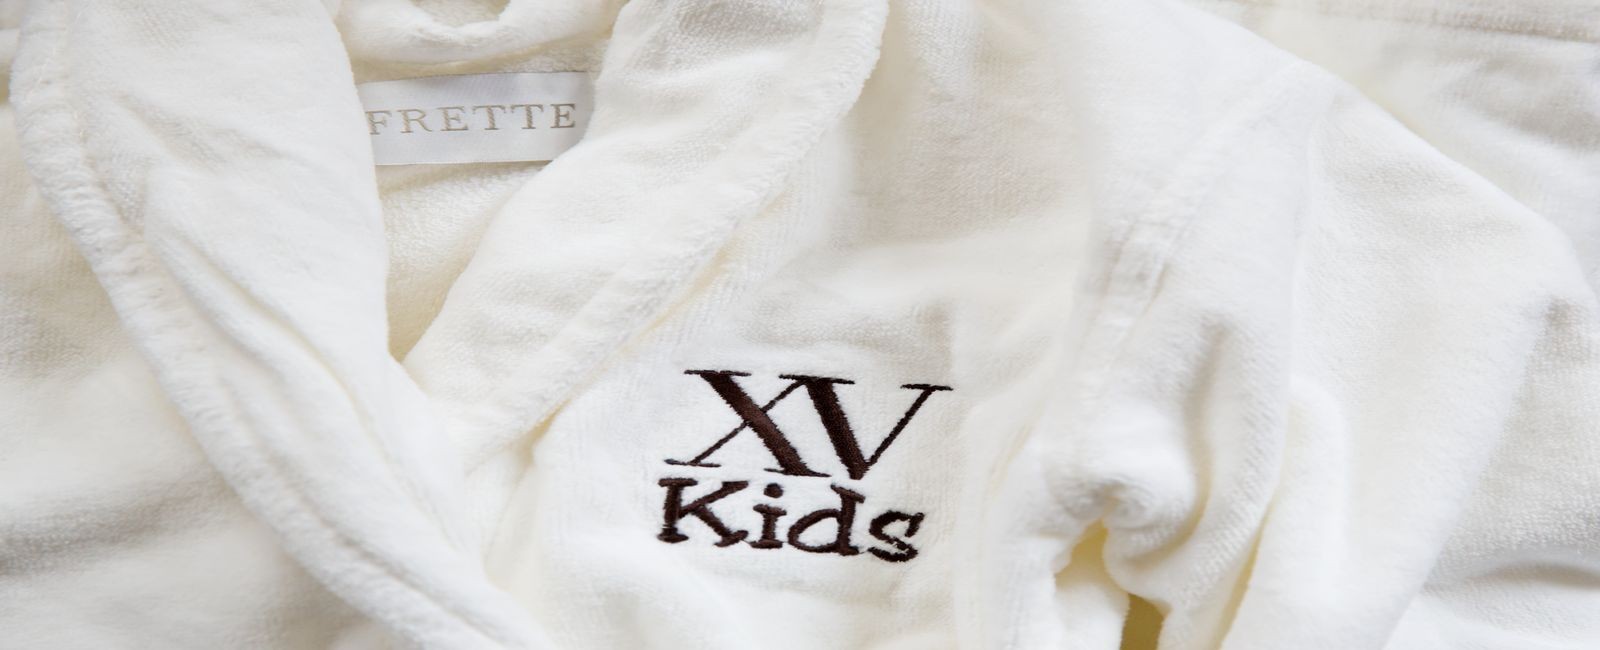 customized frette bathrobes for kids